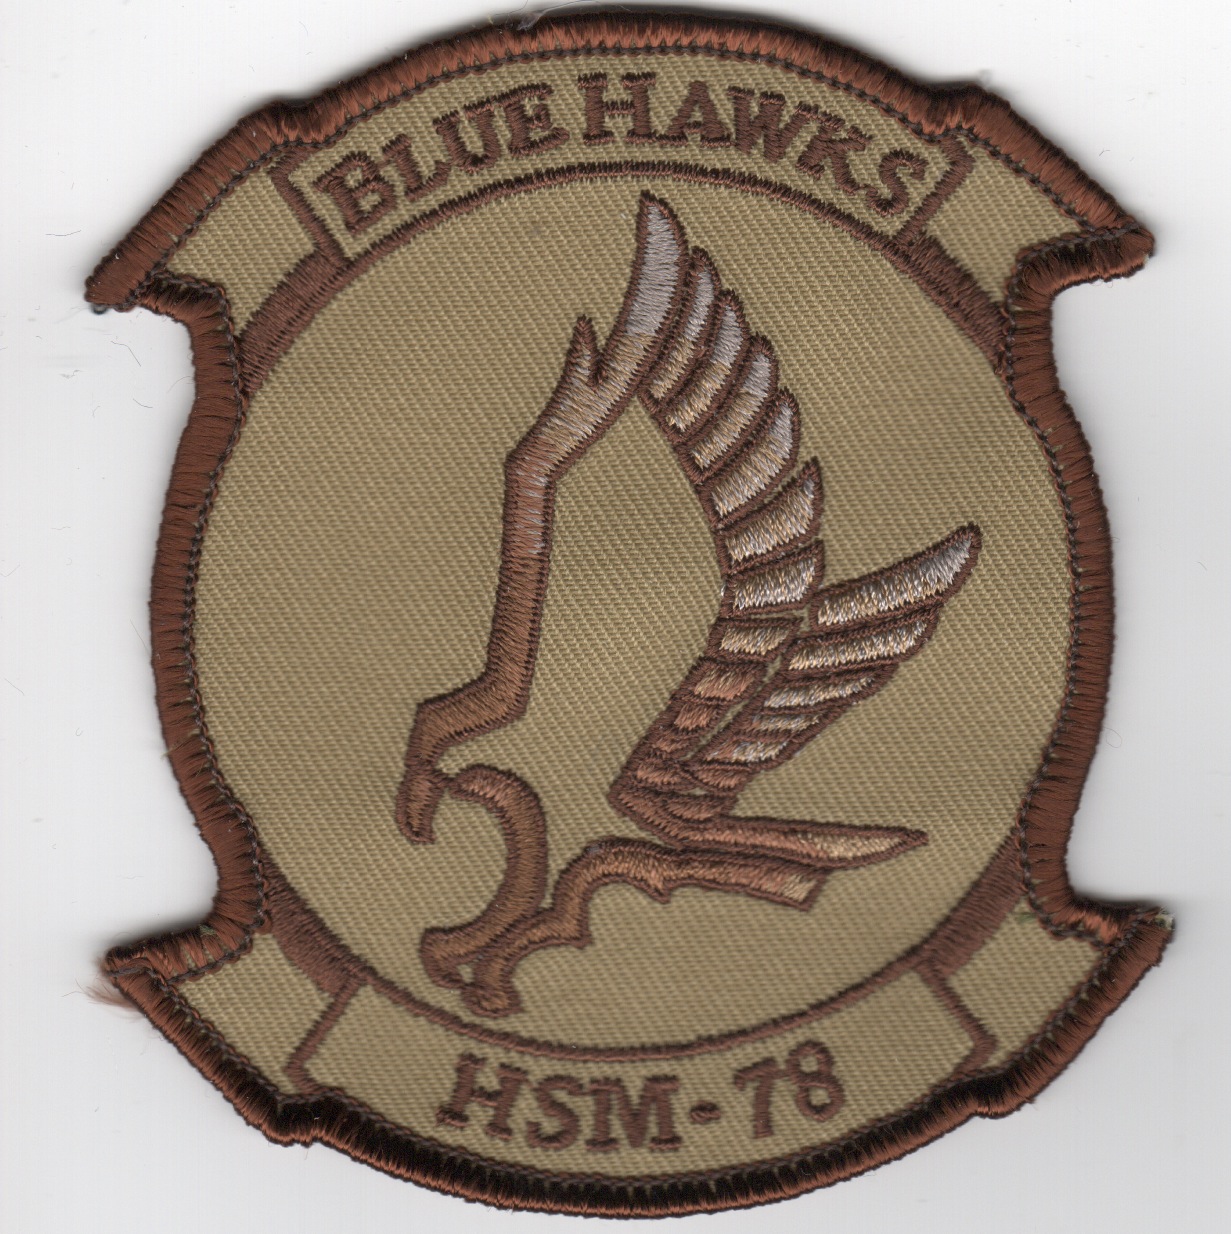 HSM-78 Squadron Patch (Des)